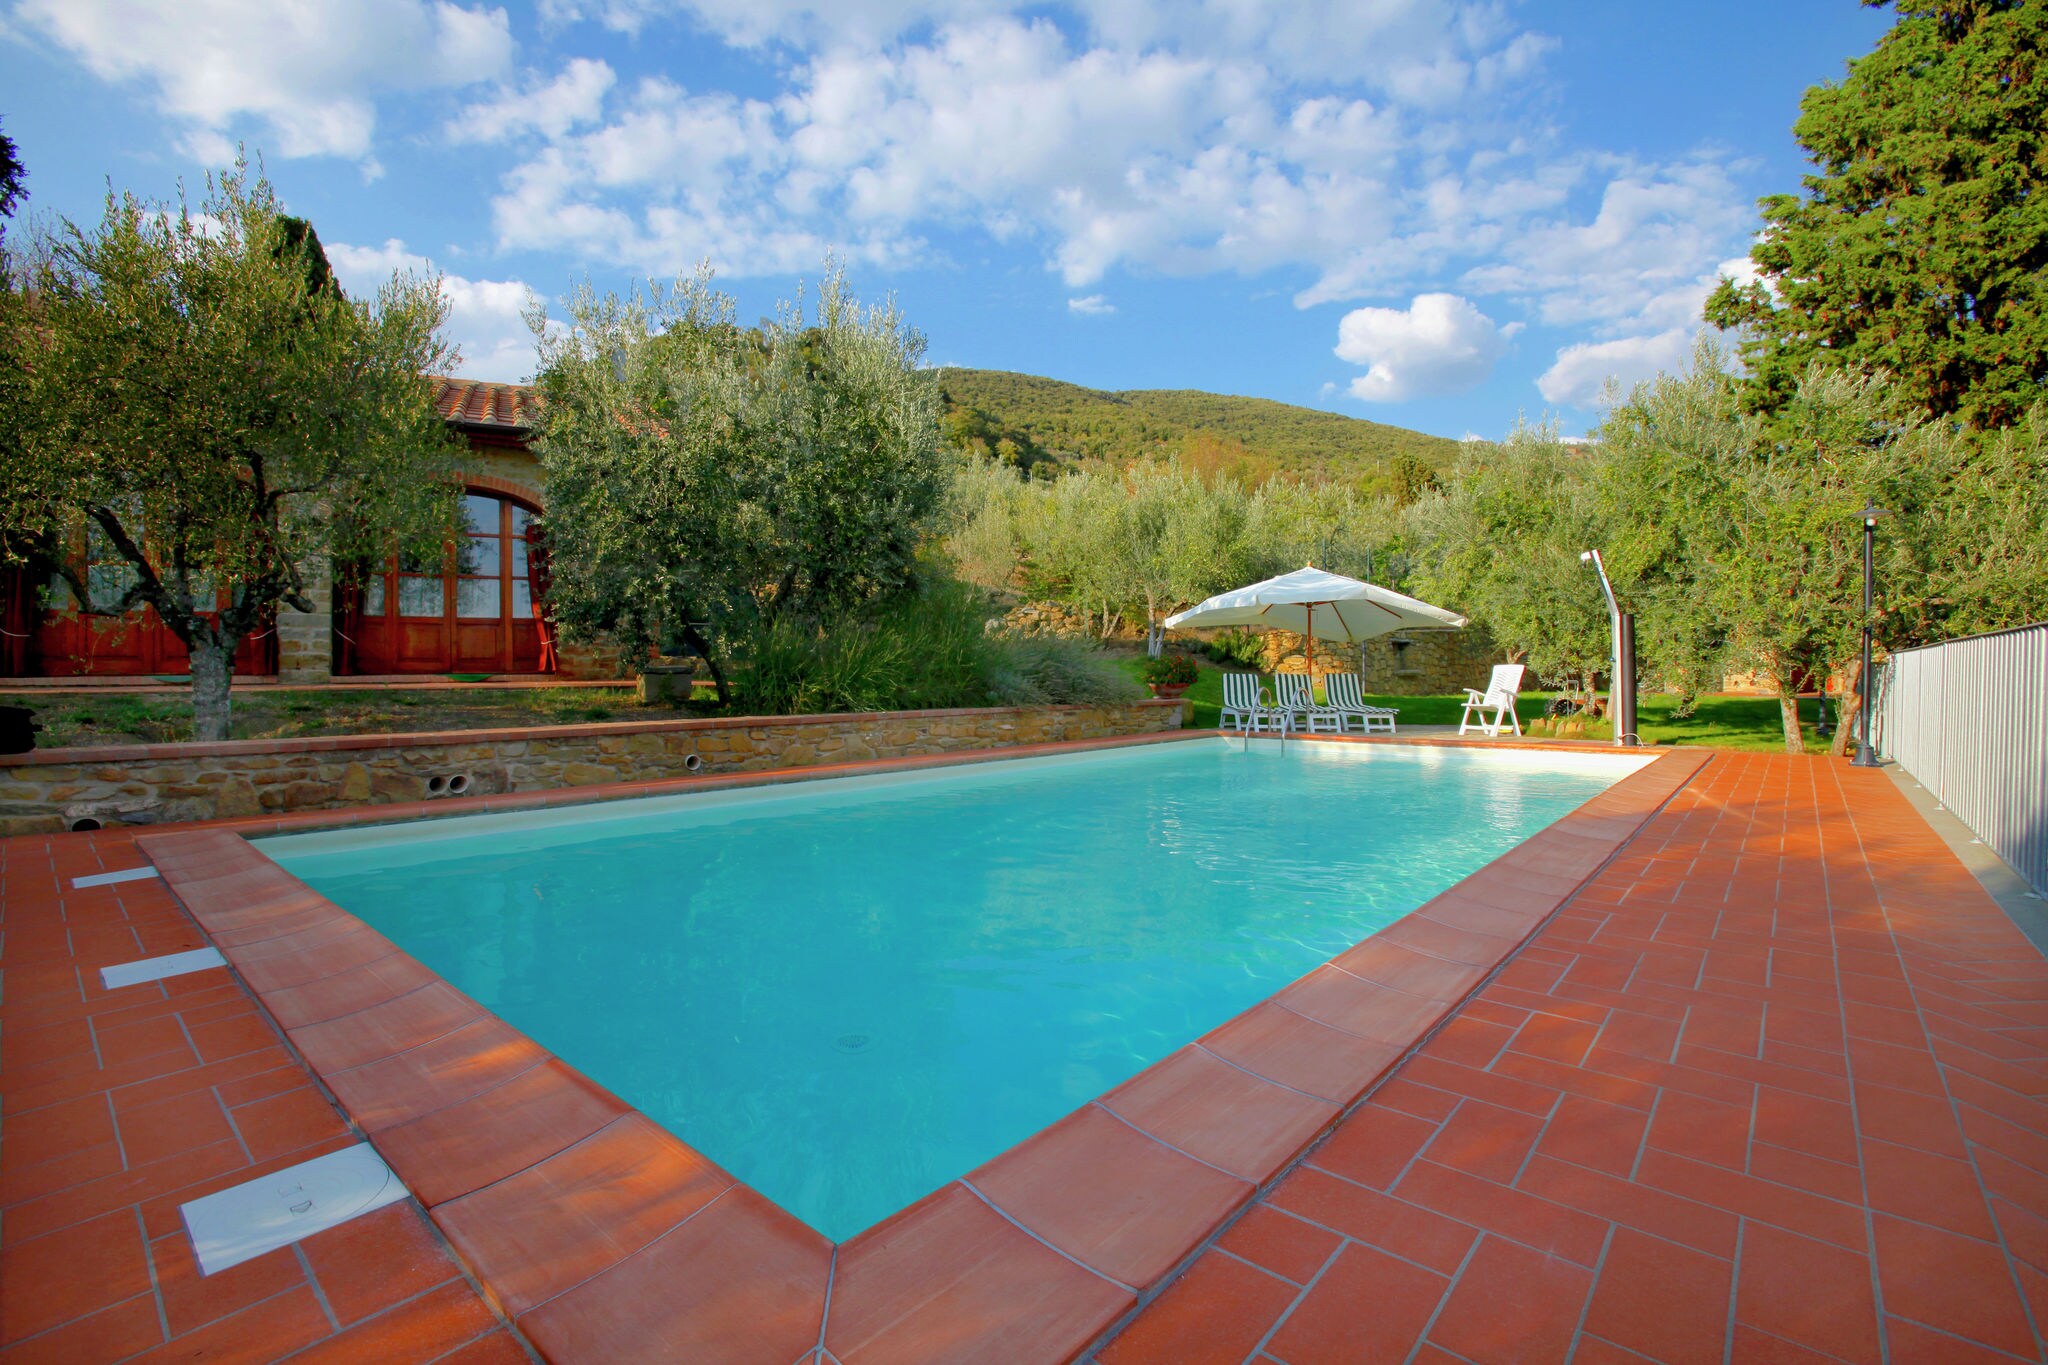 Villa met privézwembad, 2 km van stadje, ruime tuin en prachtig uitzicht